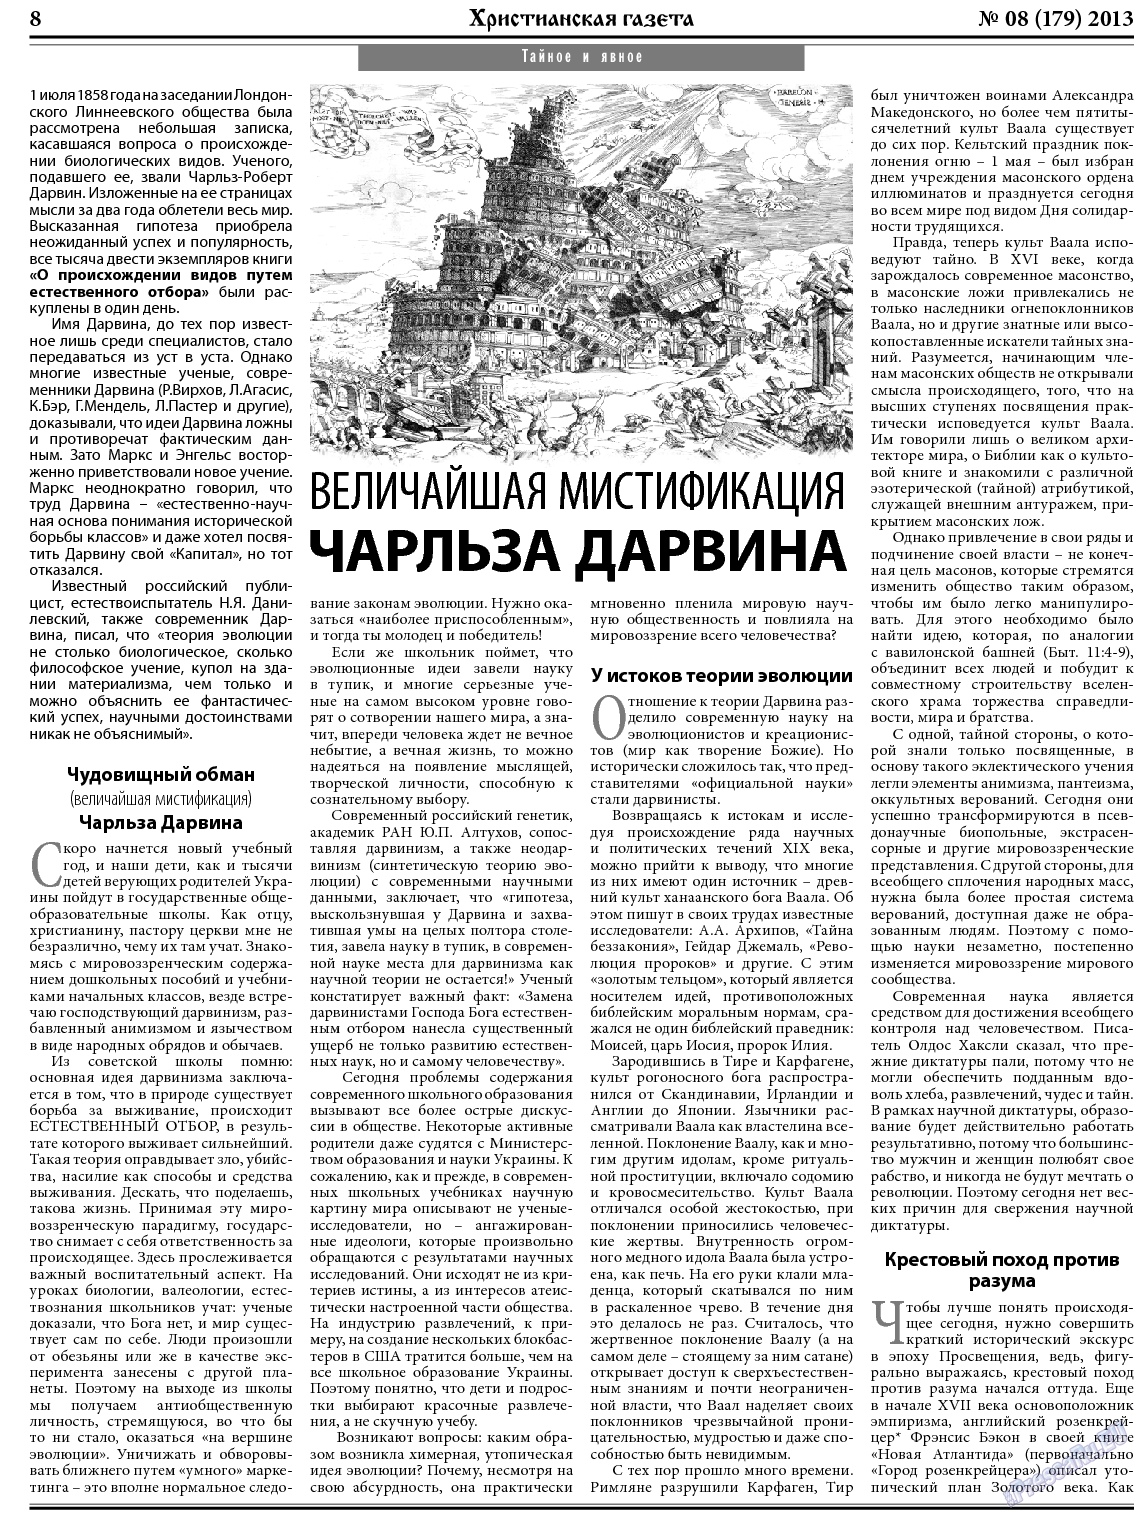 Христианская газета, газета. 2013 №8 стр.8